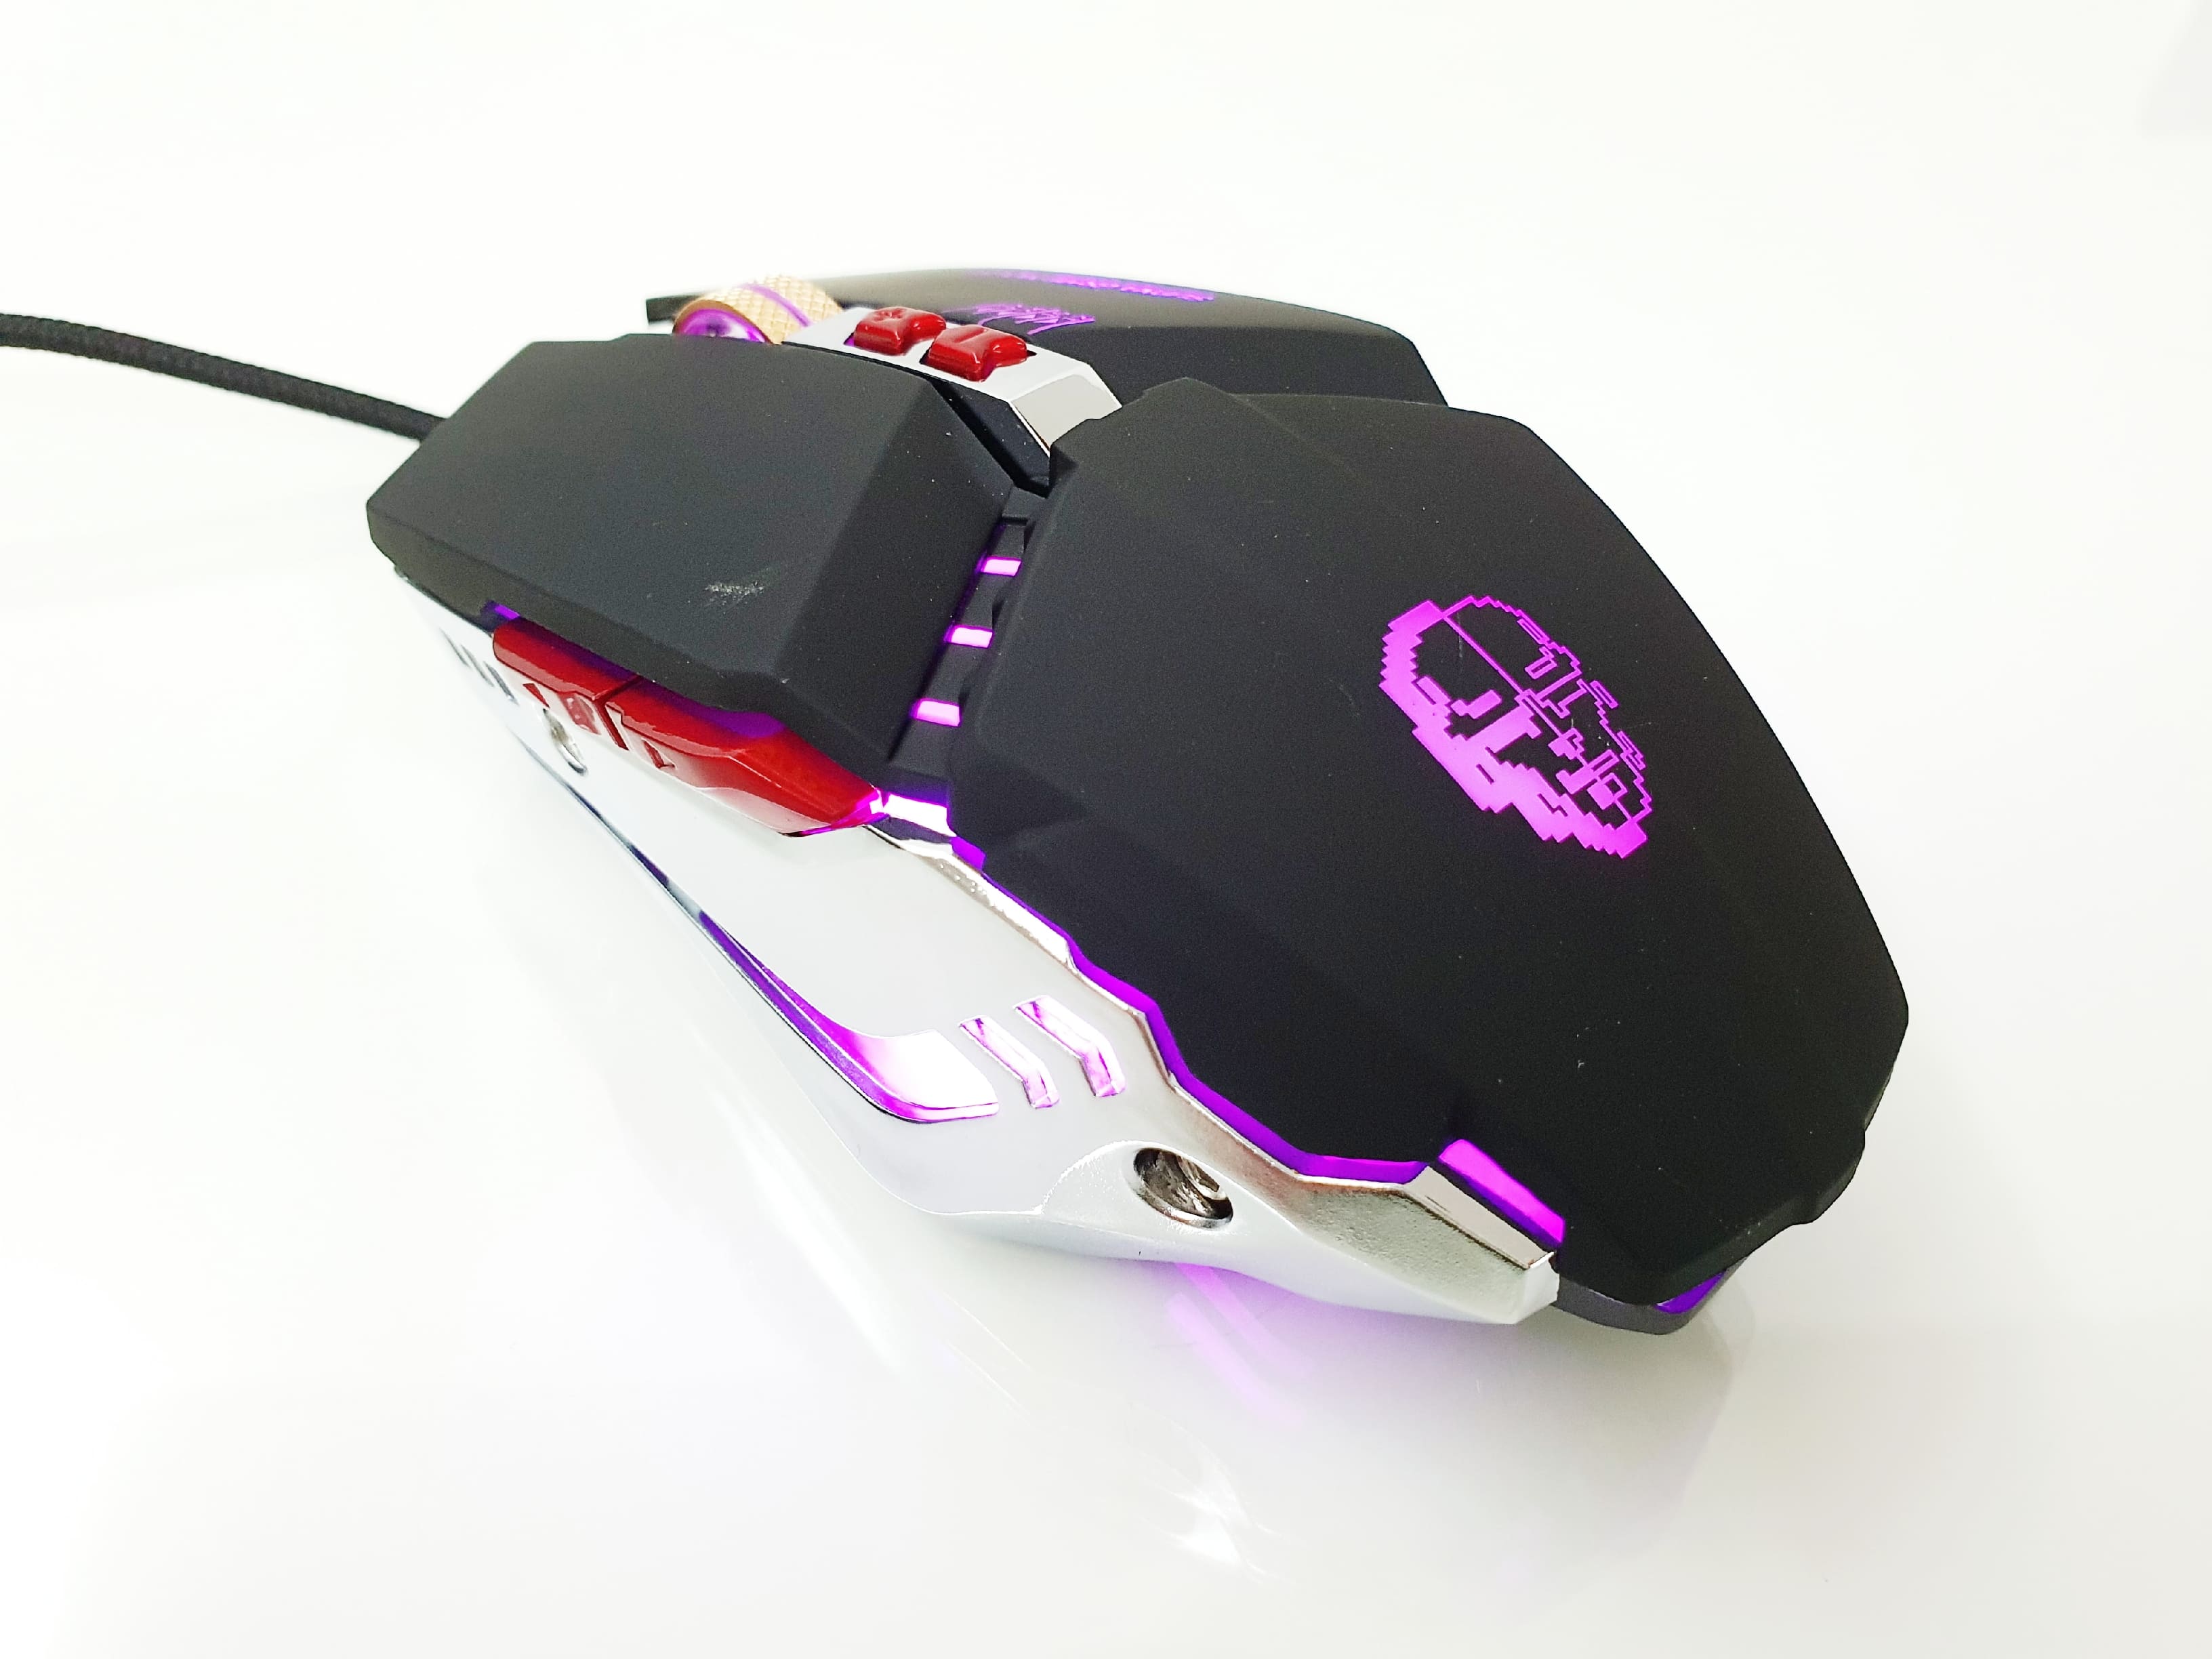 Dynamite Backlit Gaming Mouse (DM 200) BLACK